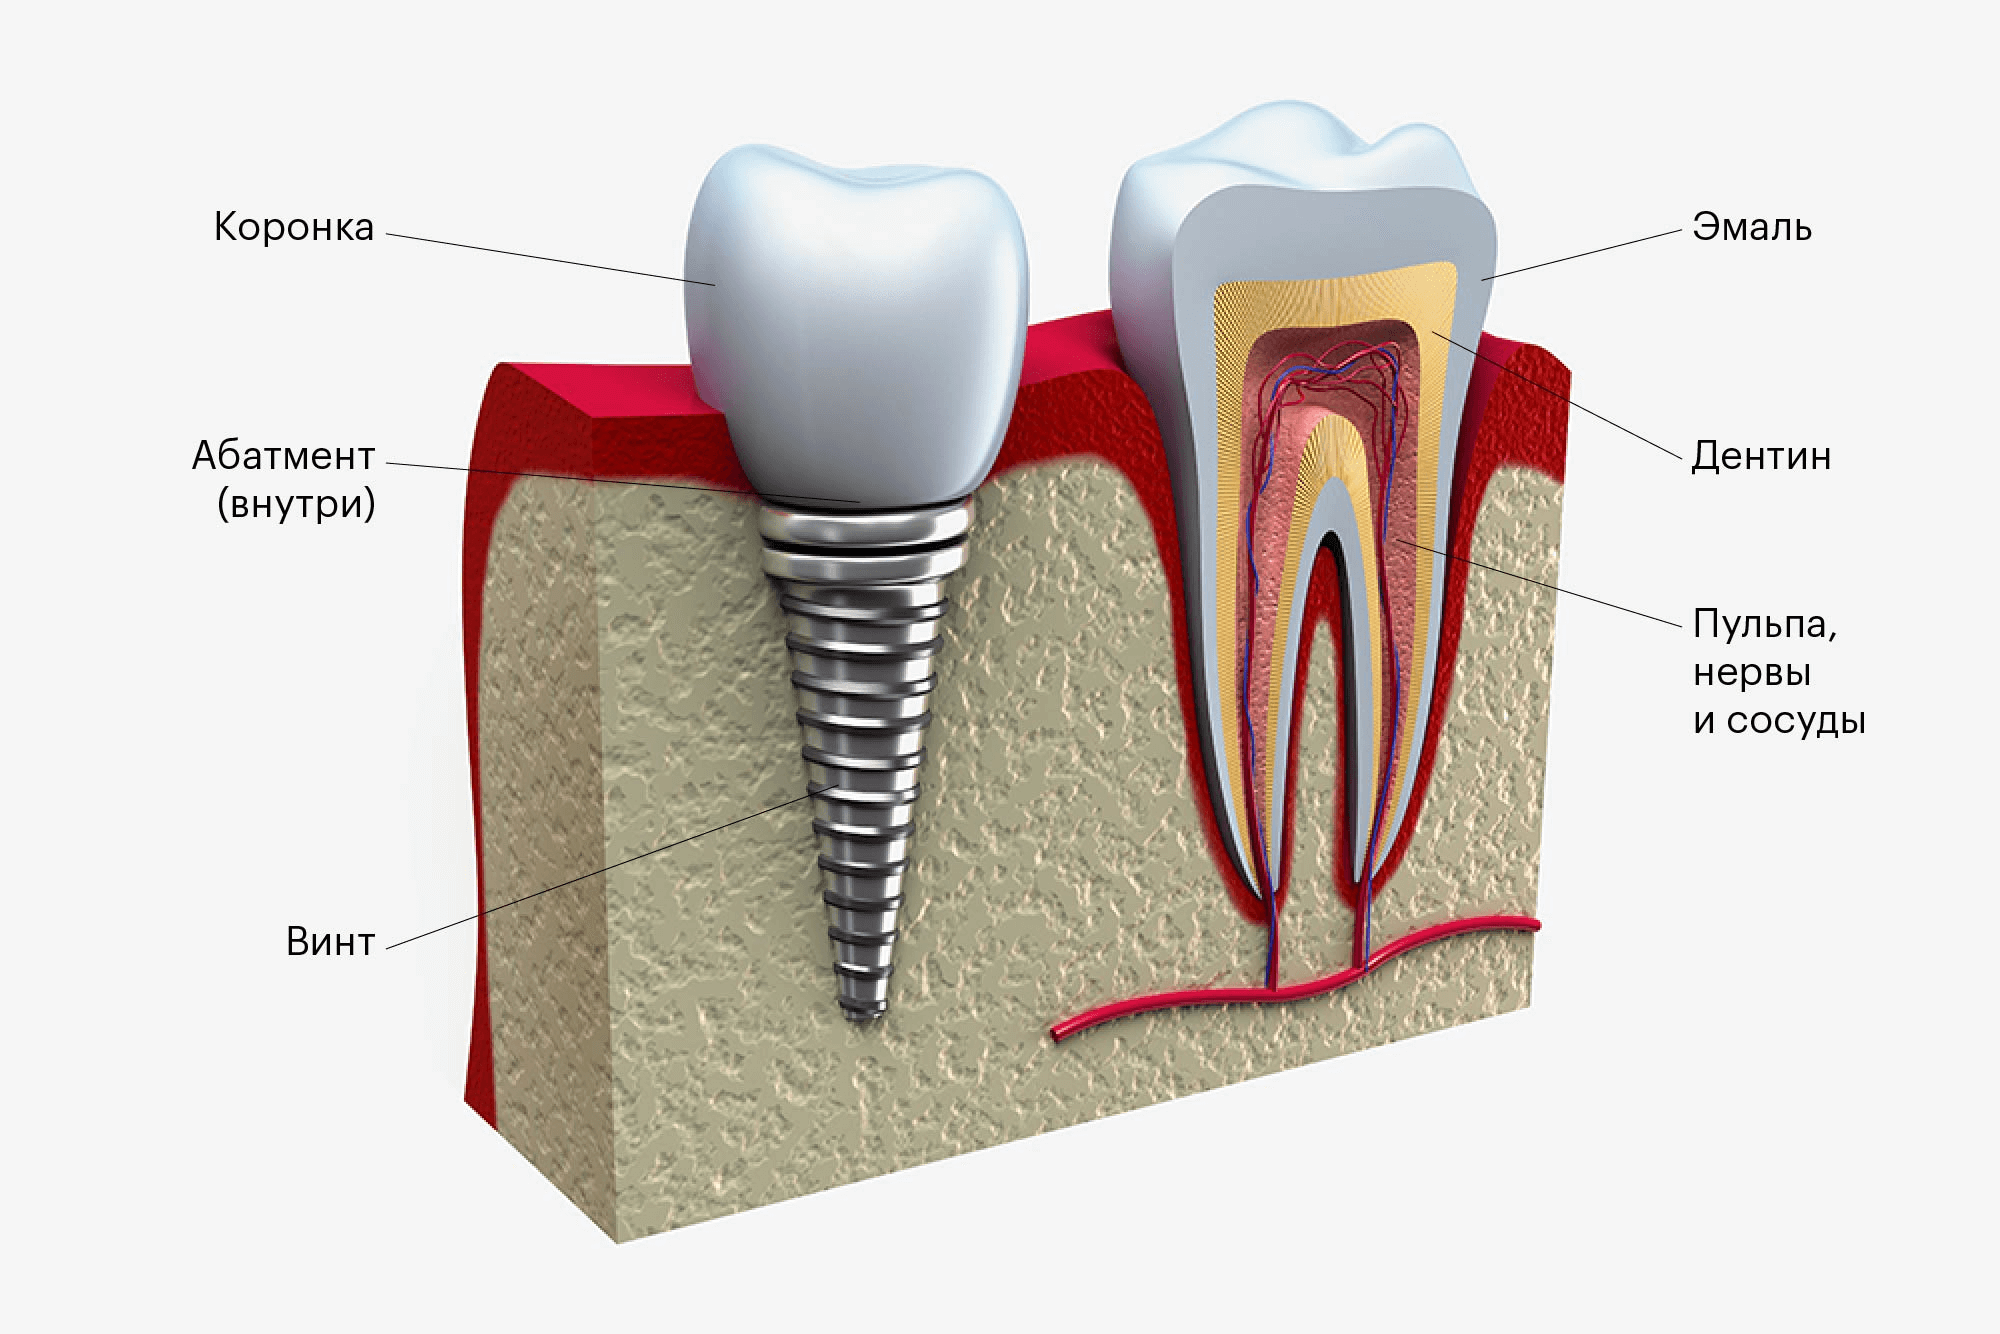 Имплантат похож на схематичный зуб. Главное отличие — внутри коронки нет кровеносных сосудов и нервов, а вместо живого корня — металлический винт